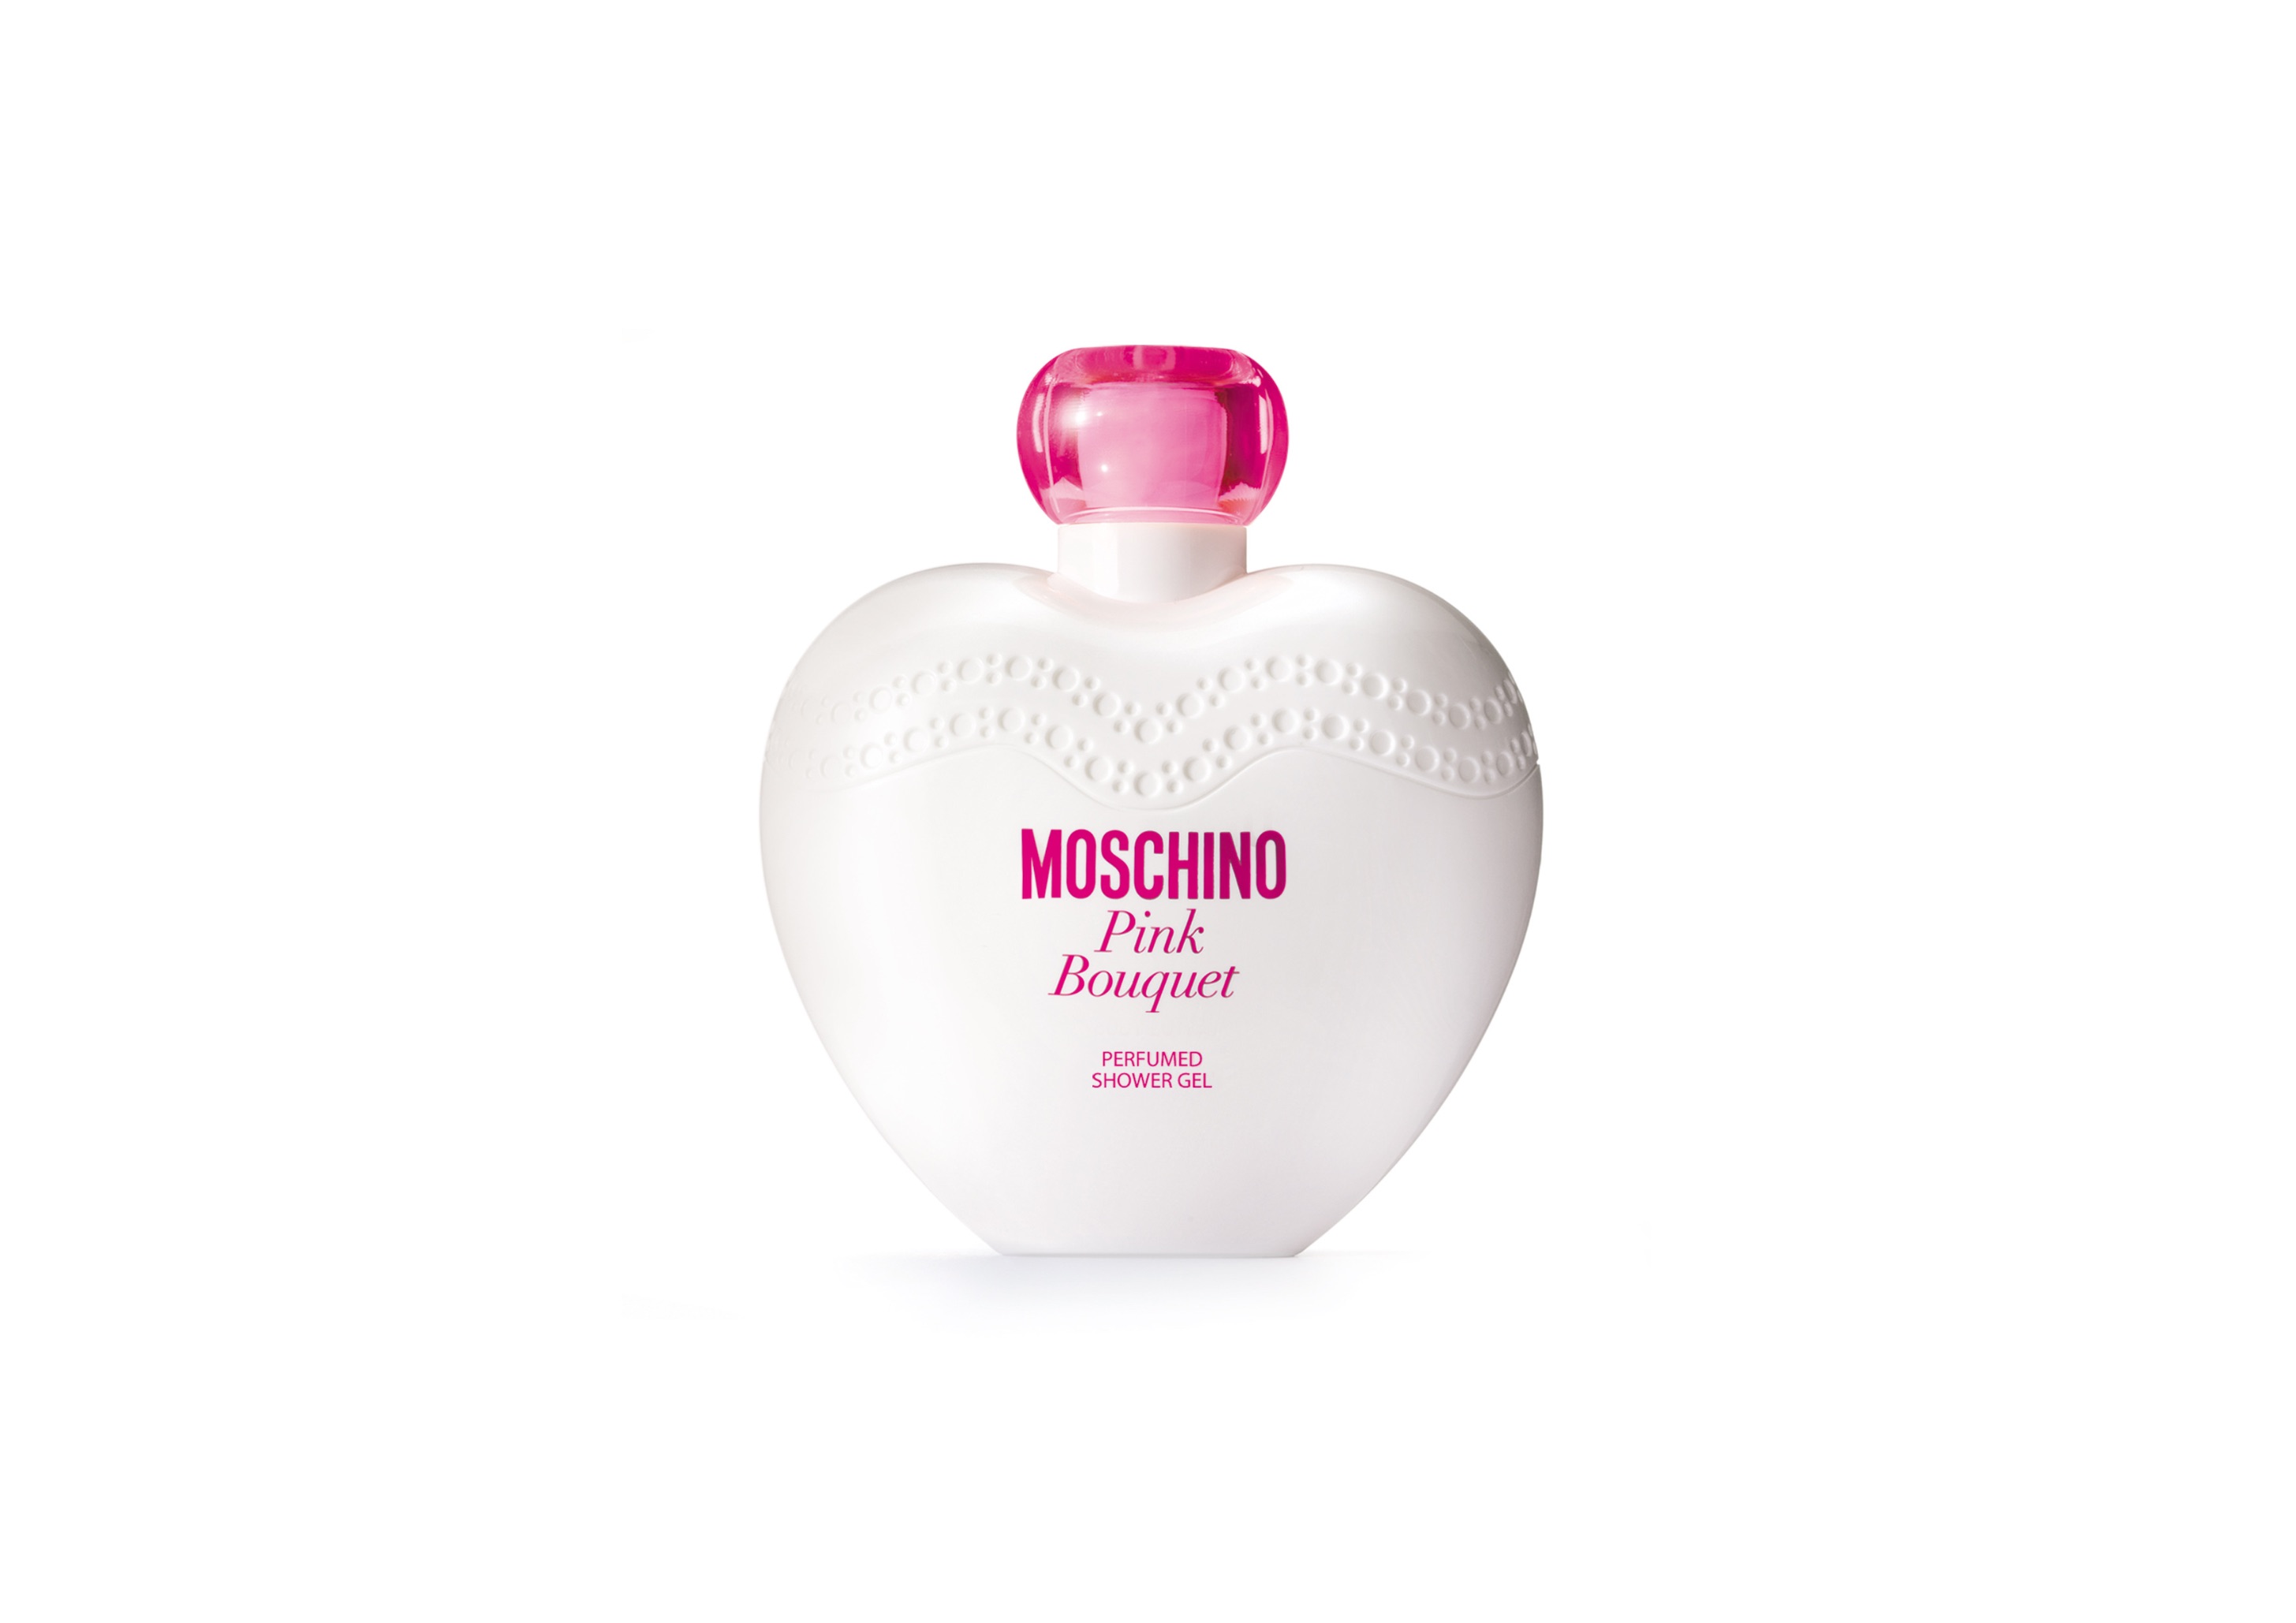 Духи moschino розовые. Москино шампанское розовое. Лосьон для тела Moschino Toy 2 Perfumed body Lotion для женщин.